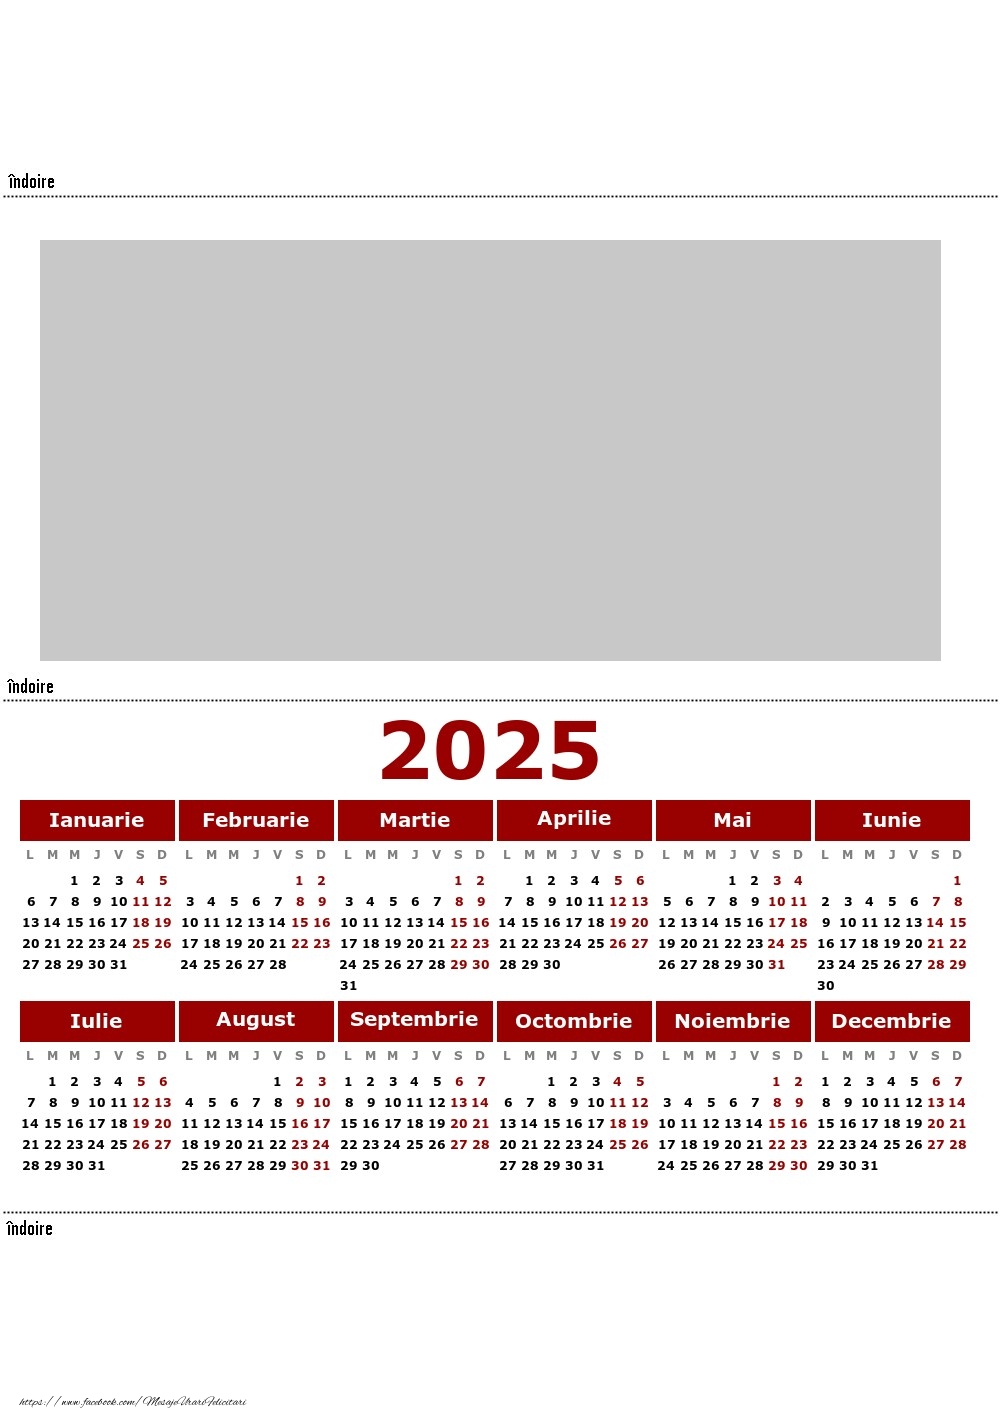 Felicitari personalizate cu calendare - Calendar 2025 de birou - Model 00120